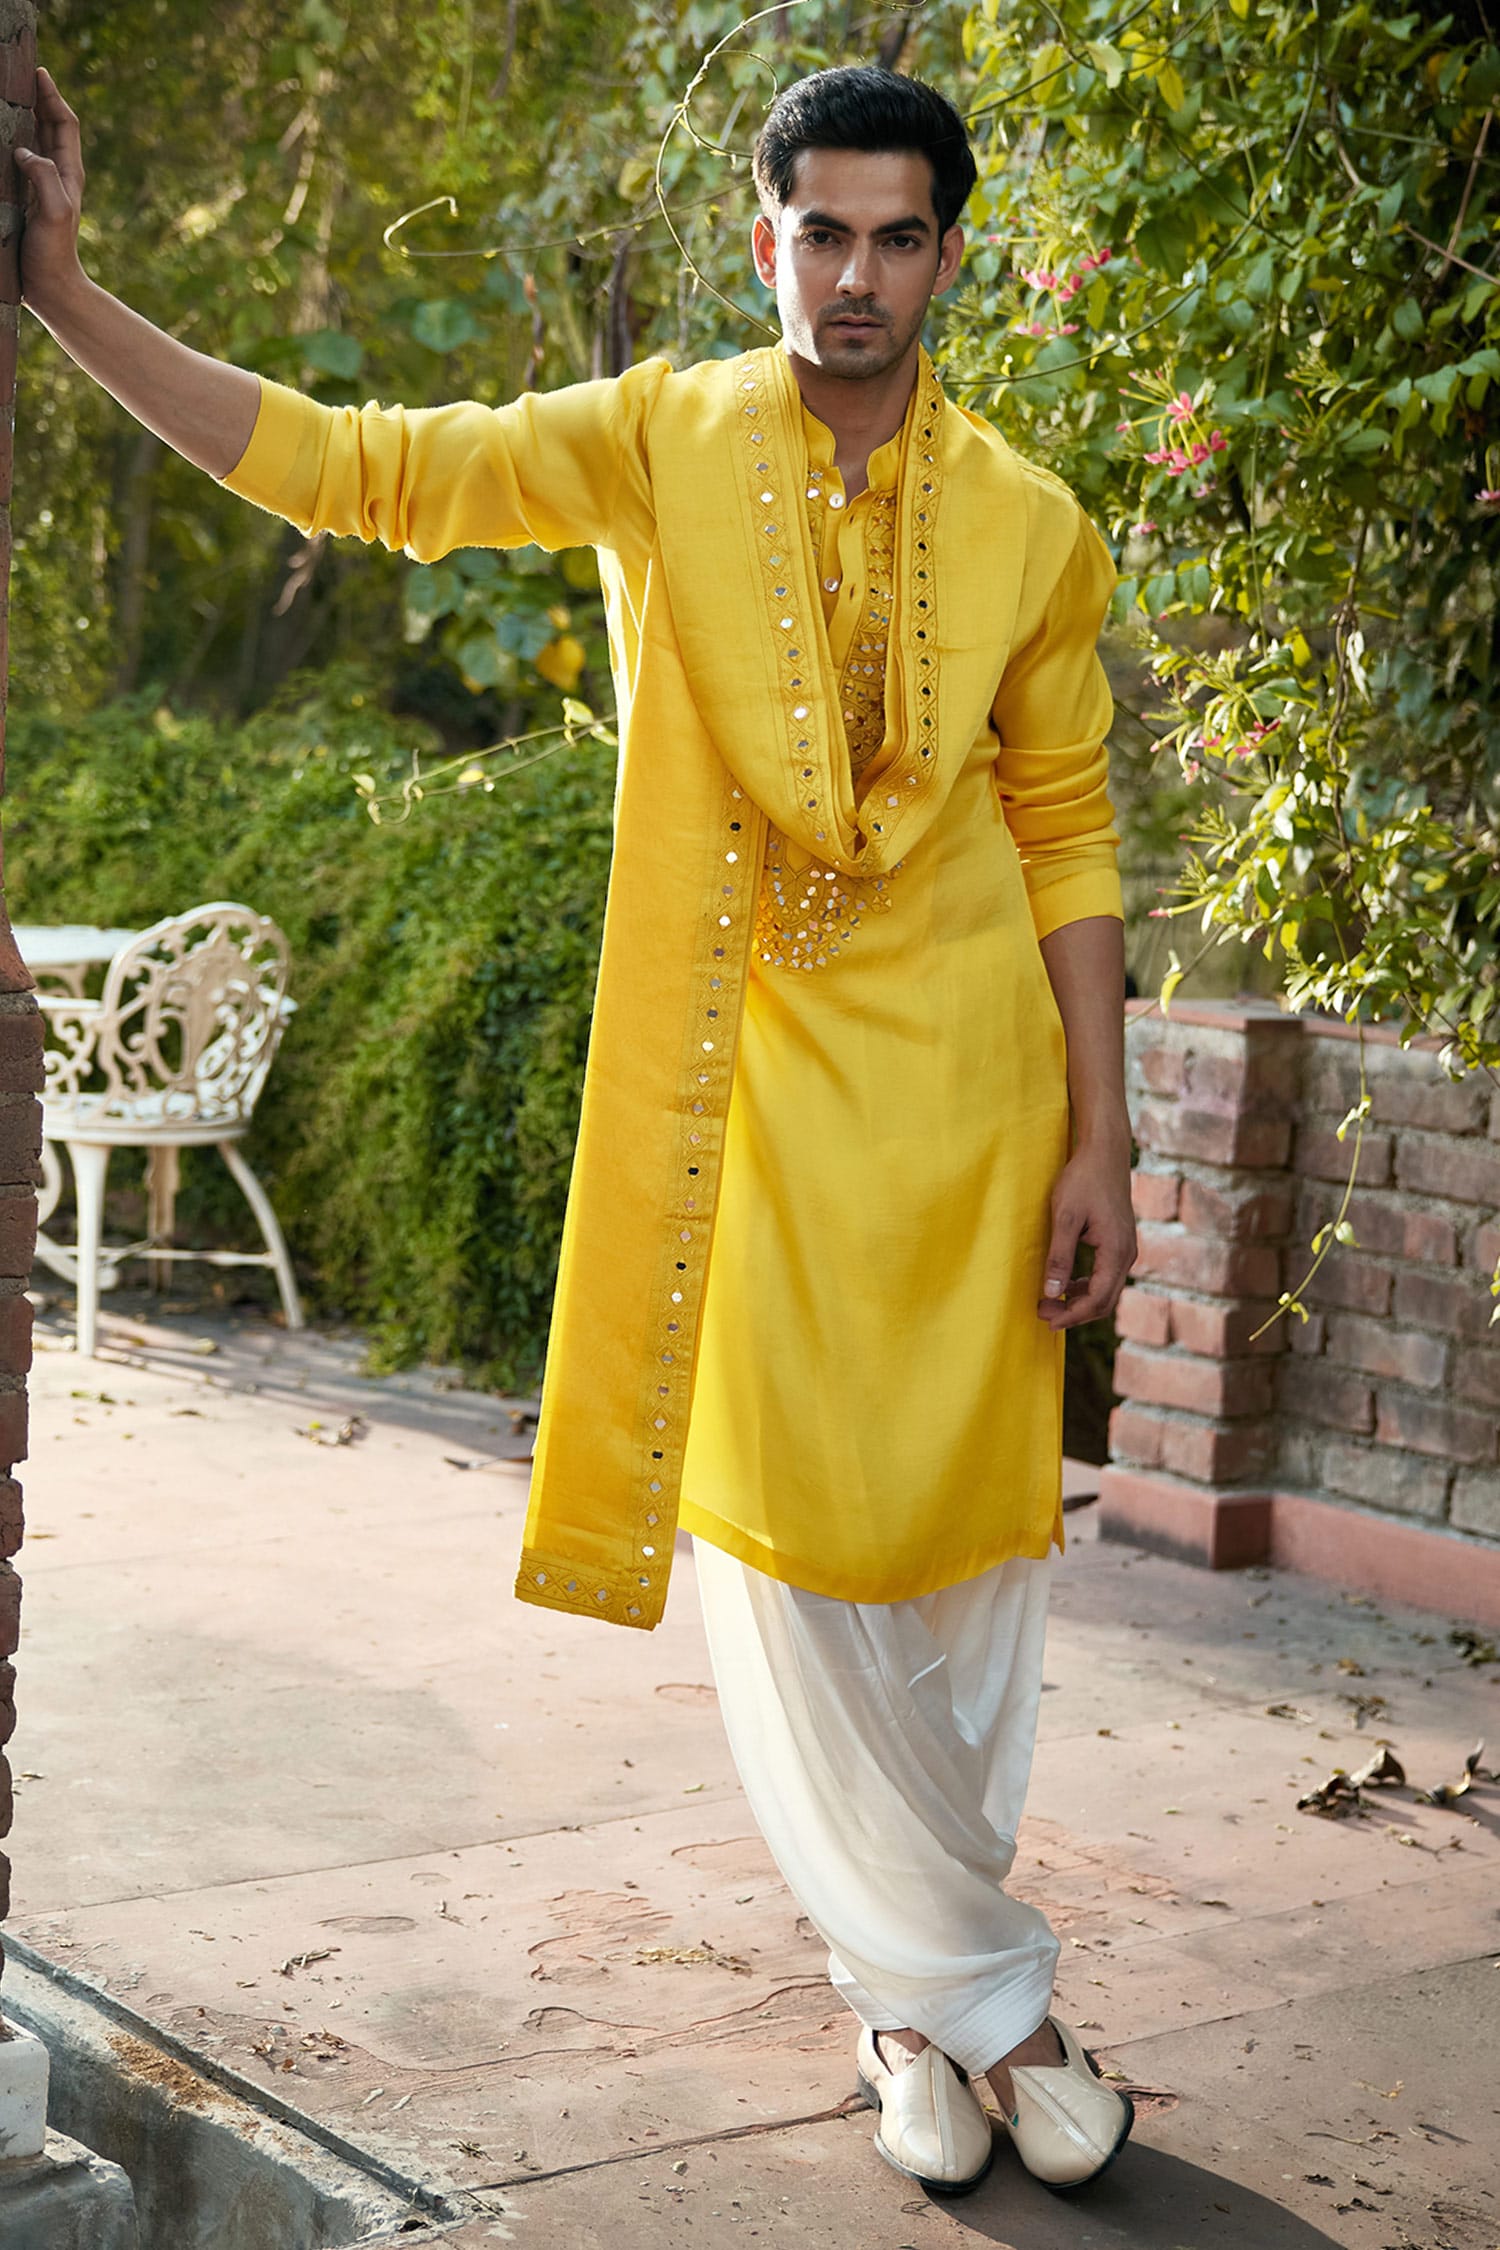 IMG_1380 | Wedding dresses men indian, Indian men fashion, Wedding kurta  for men